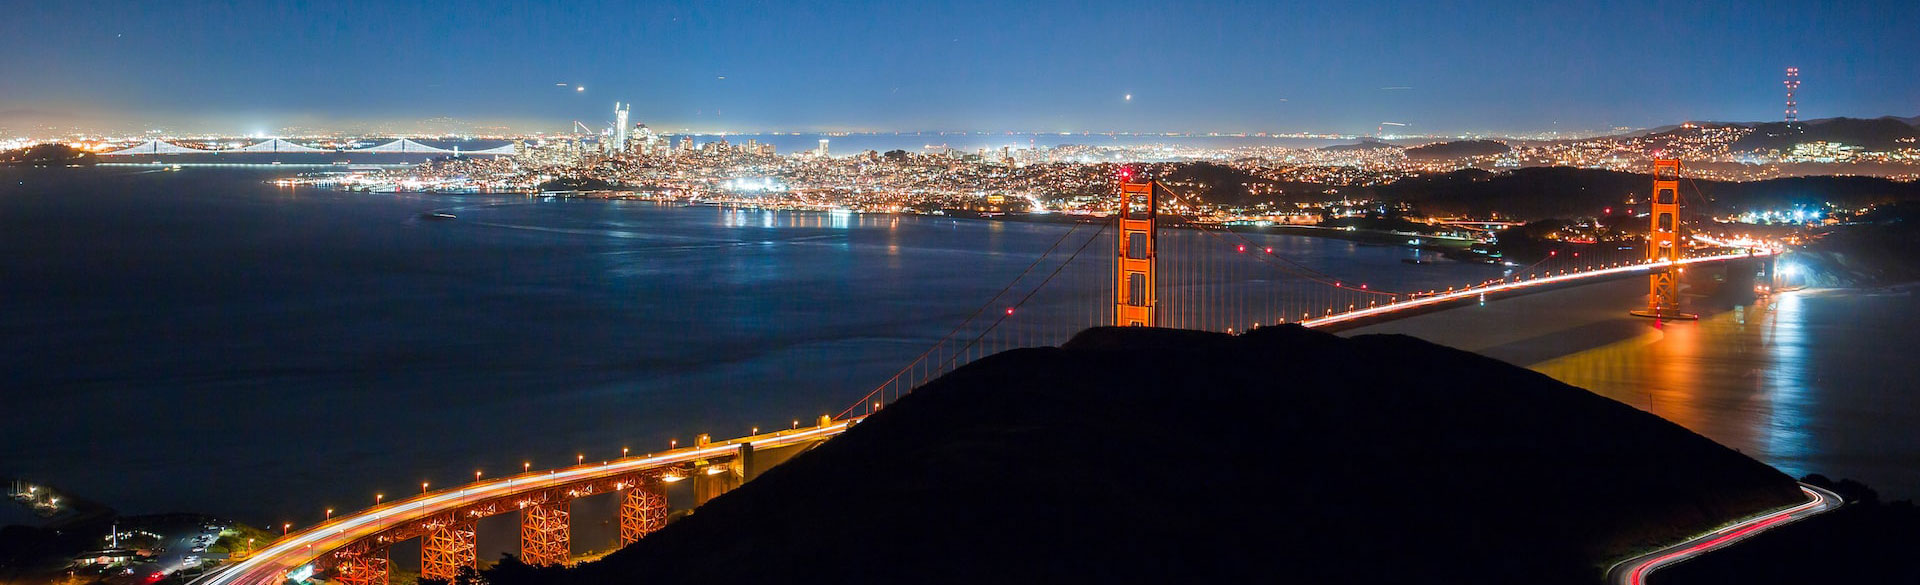 خليج سان فرانسيسكو وجسر البوابة الذهبية في الليل